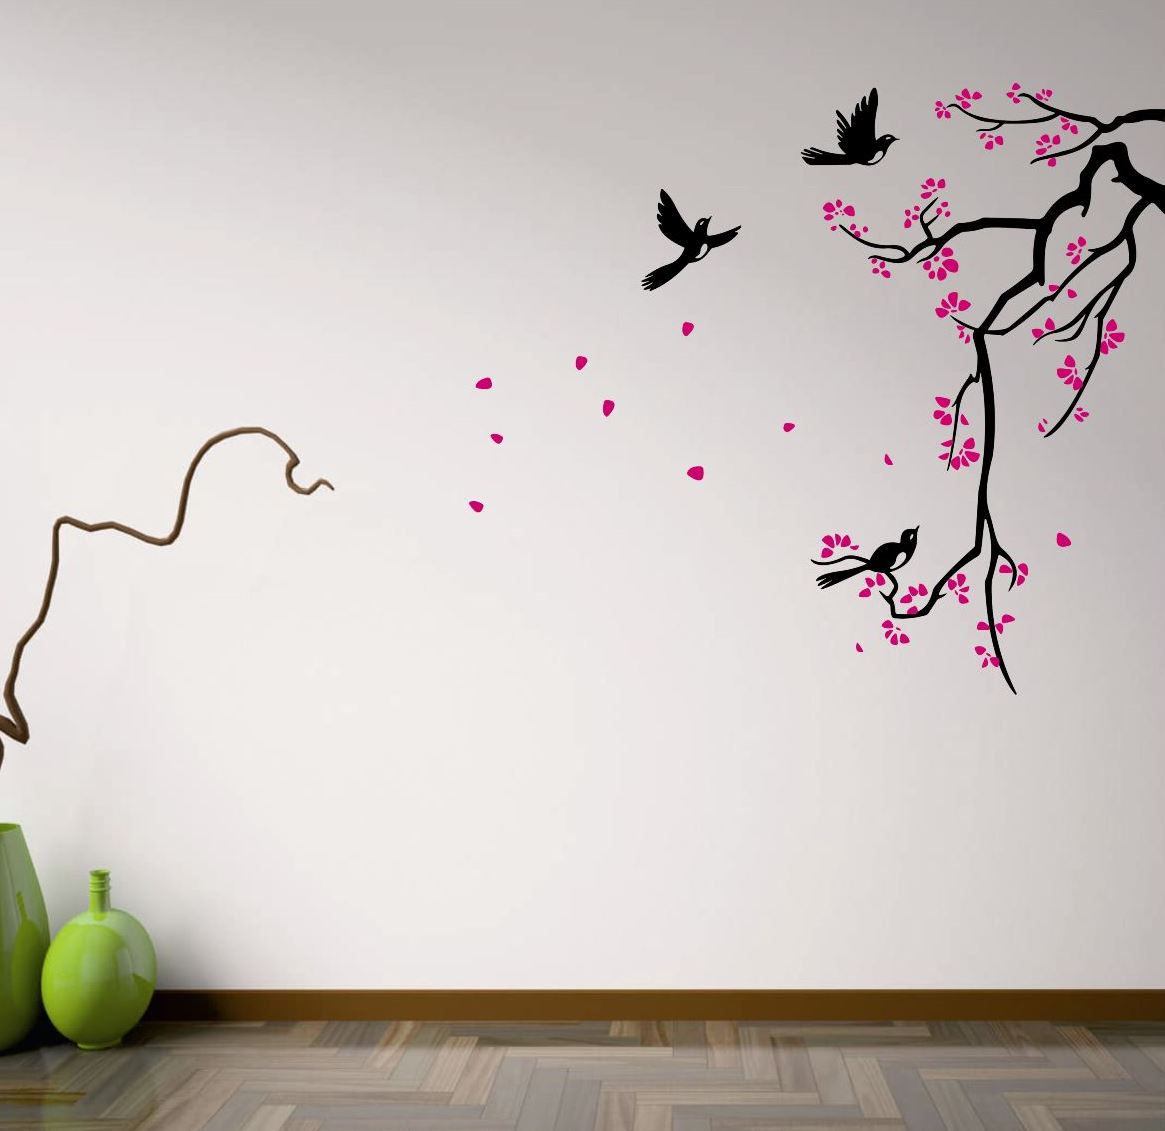 استیکر چوبی با شکوفه های رنگی چوبی ، تزیین اتاق کودک با پرنده های چوبی